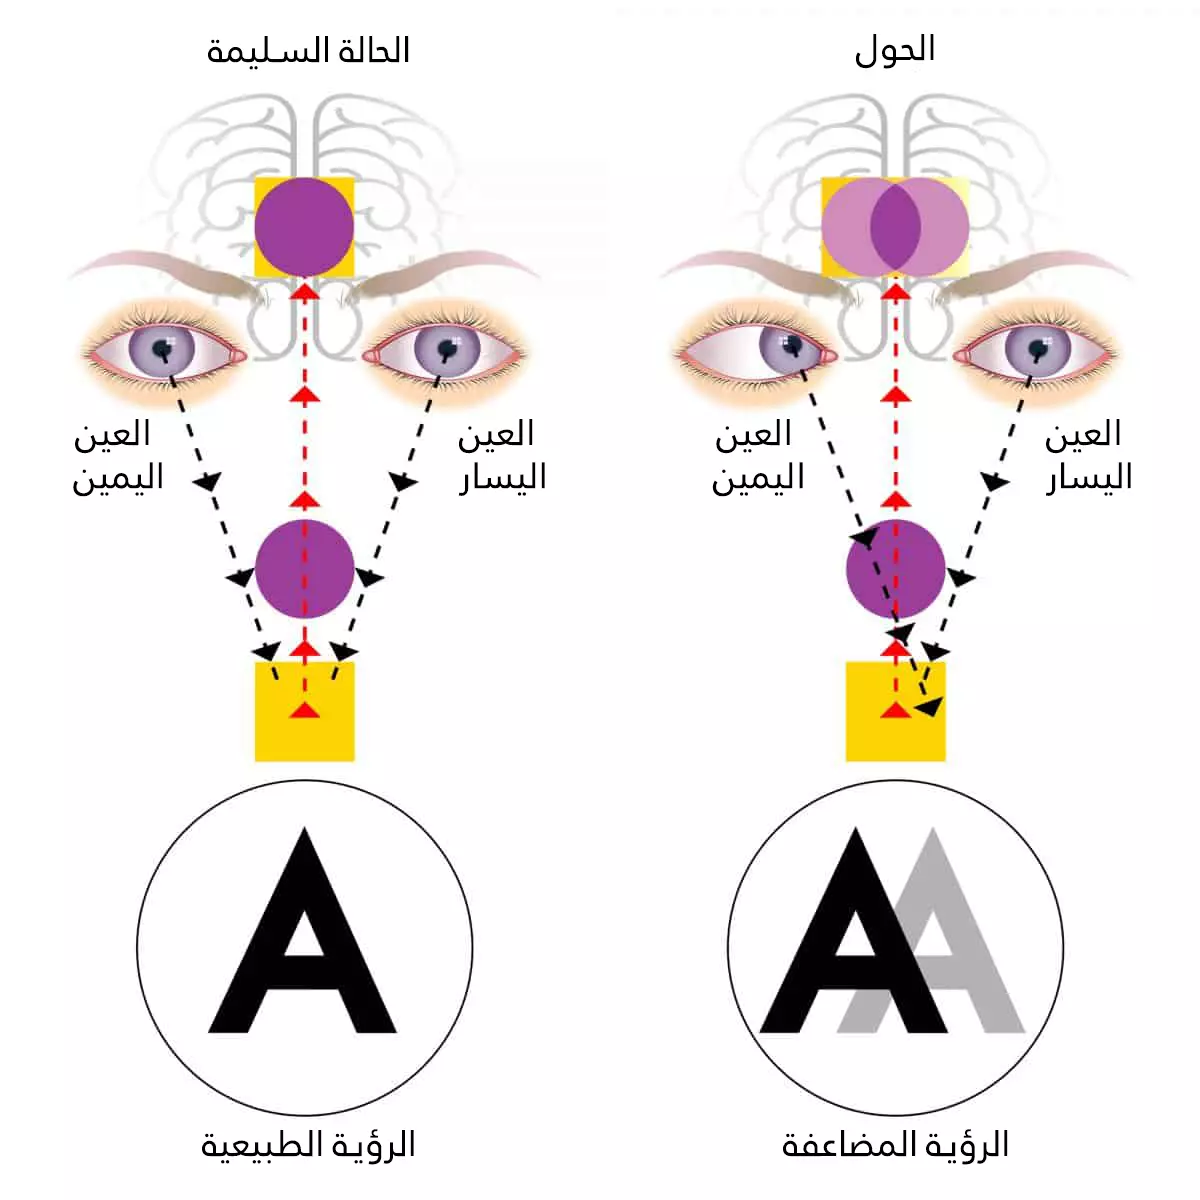 في الالة الطبيعية تركز العينان على نفس النقطة لكن في الحول تركز العينان على نقطتين مختلفتين